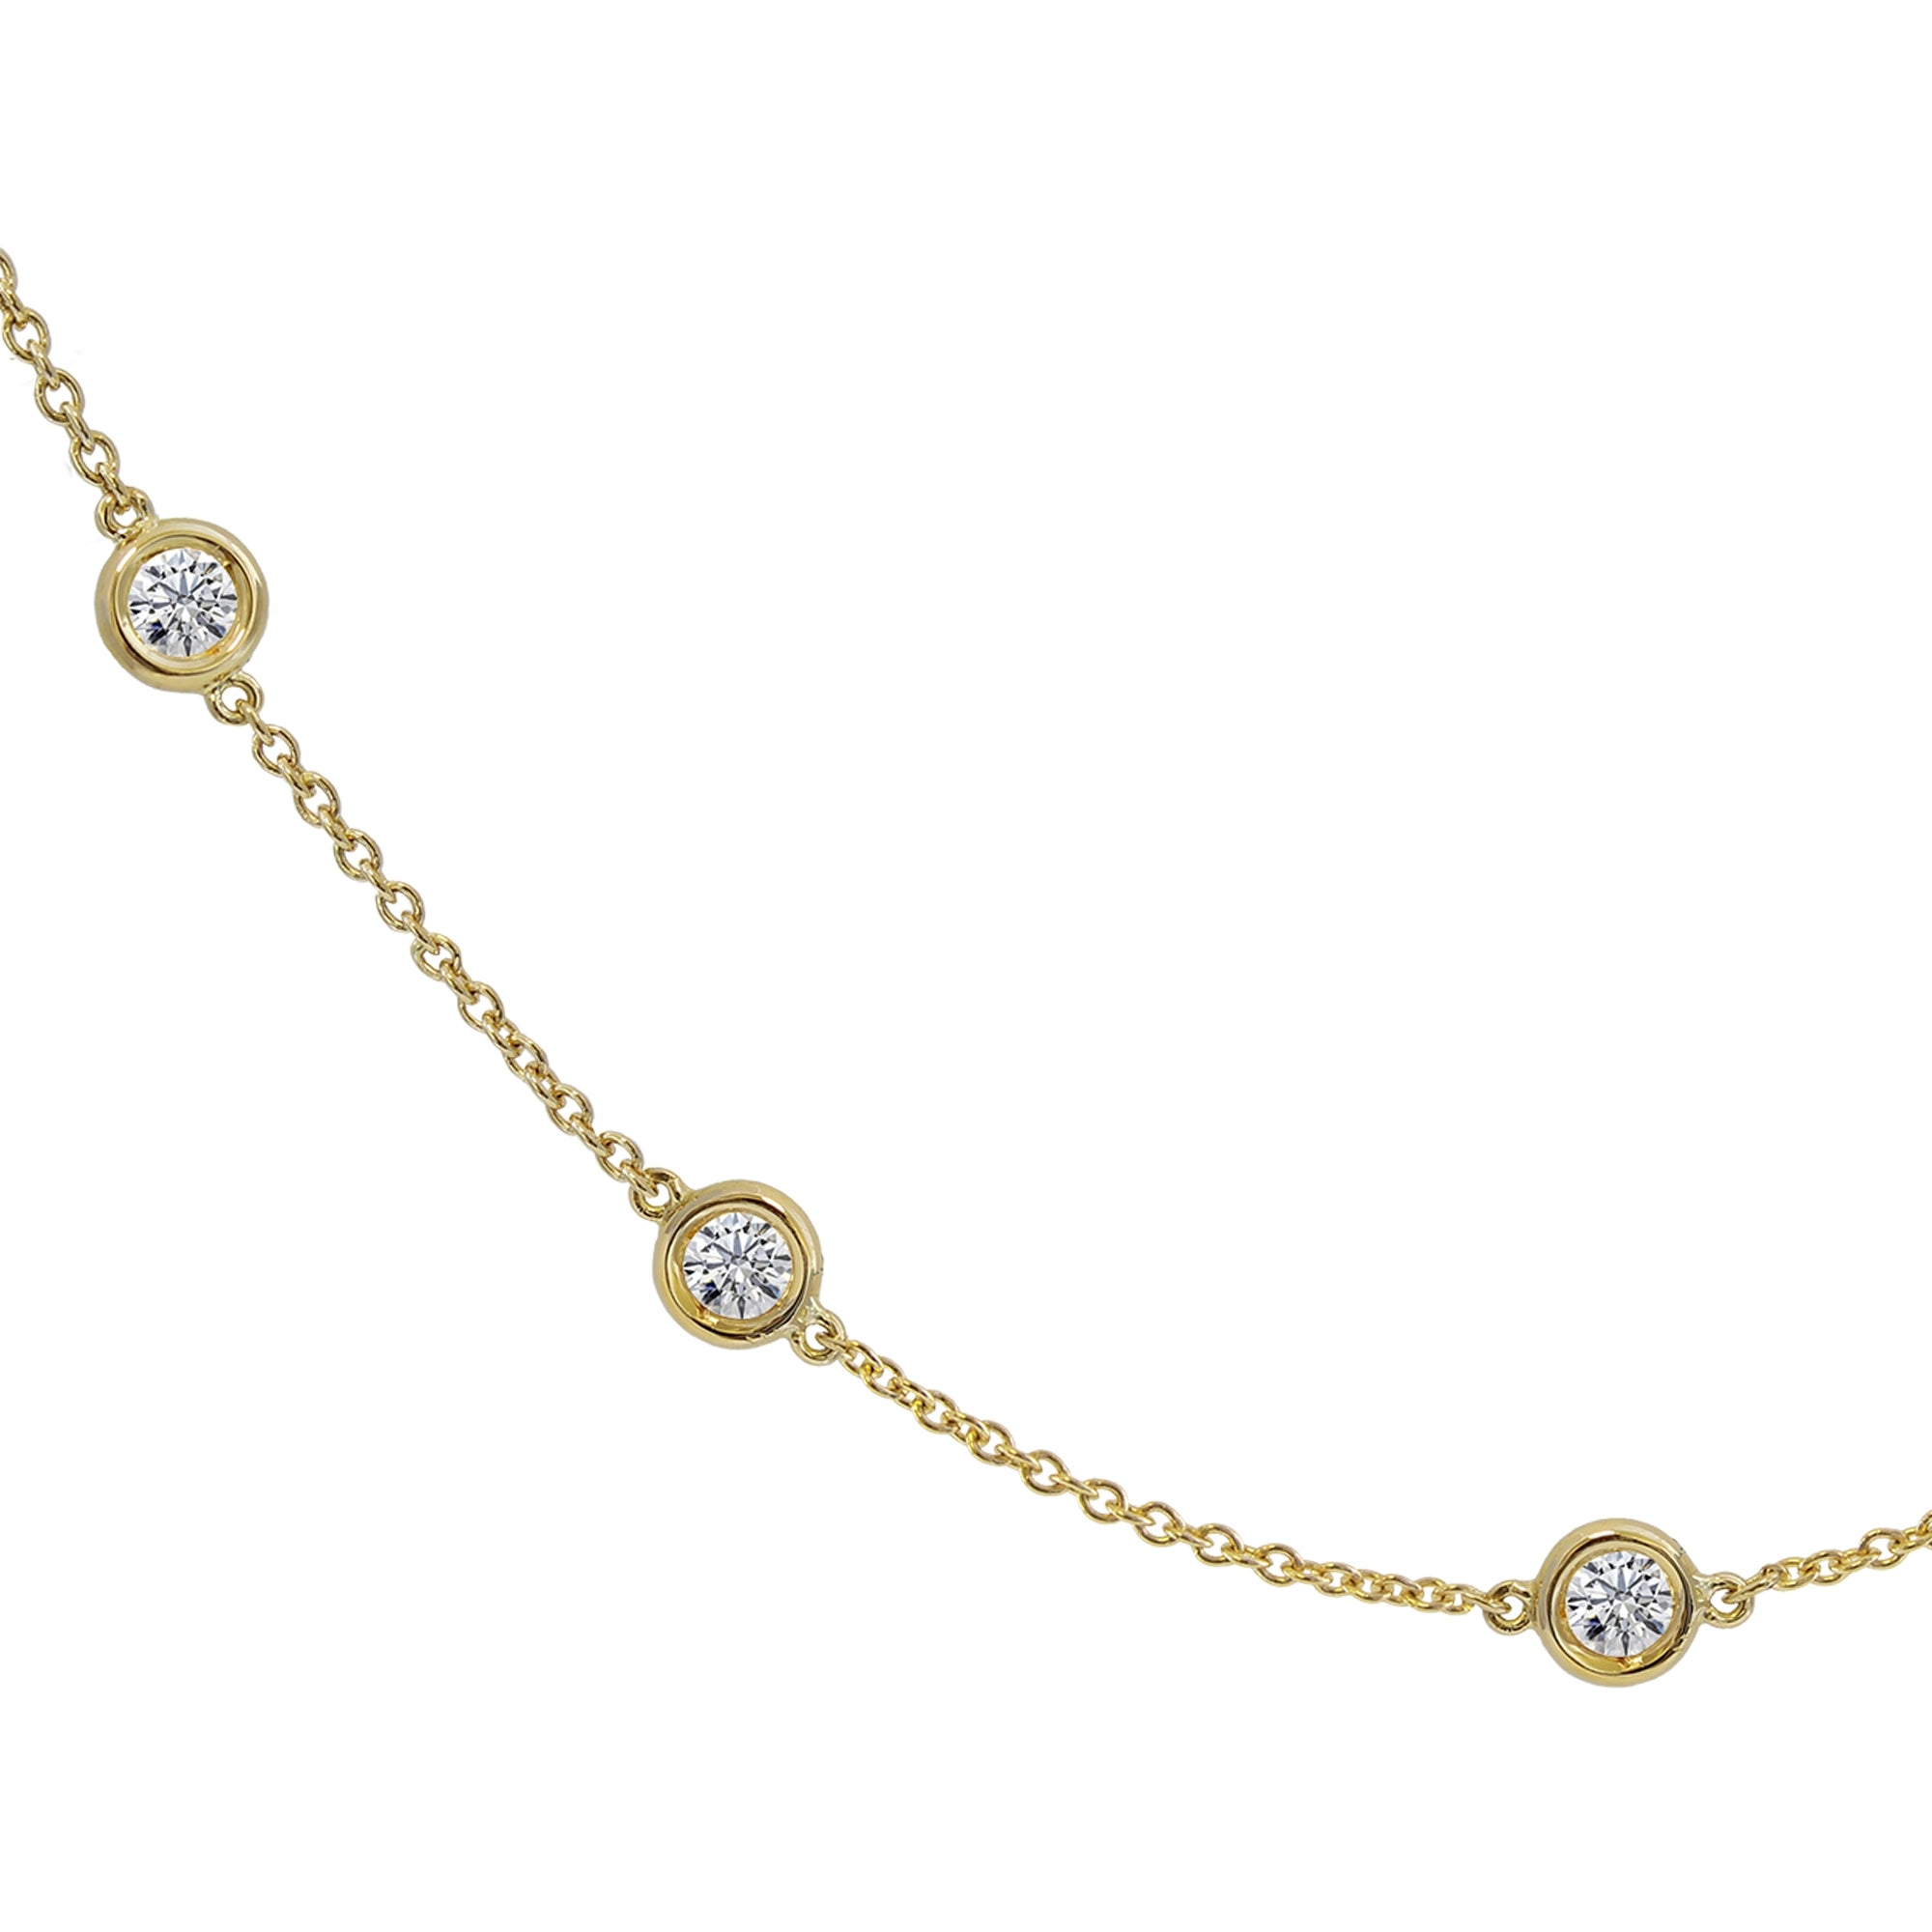 Gargantilla Diamantes talla brillante 0.70ct oro 18kt. 7 biseles repartidos a lo largo de la cadena.